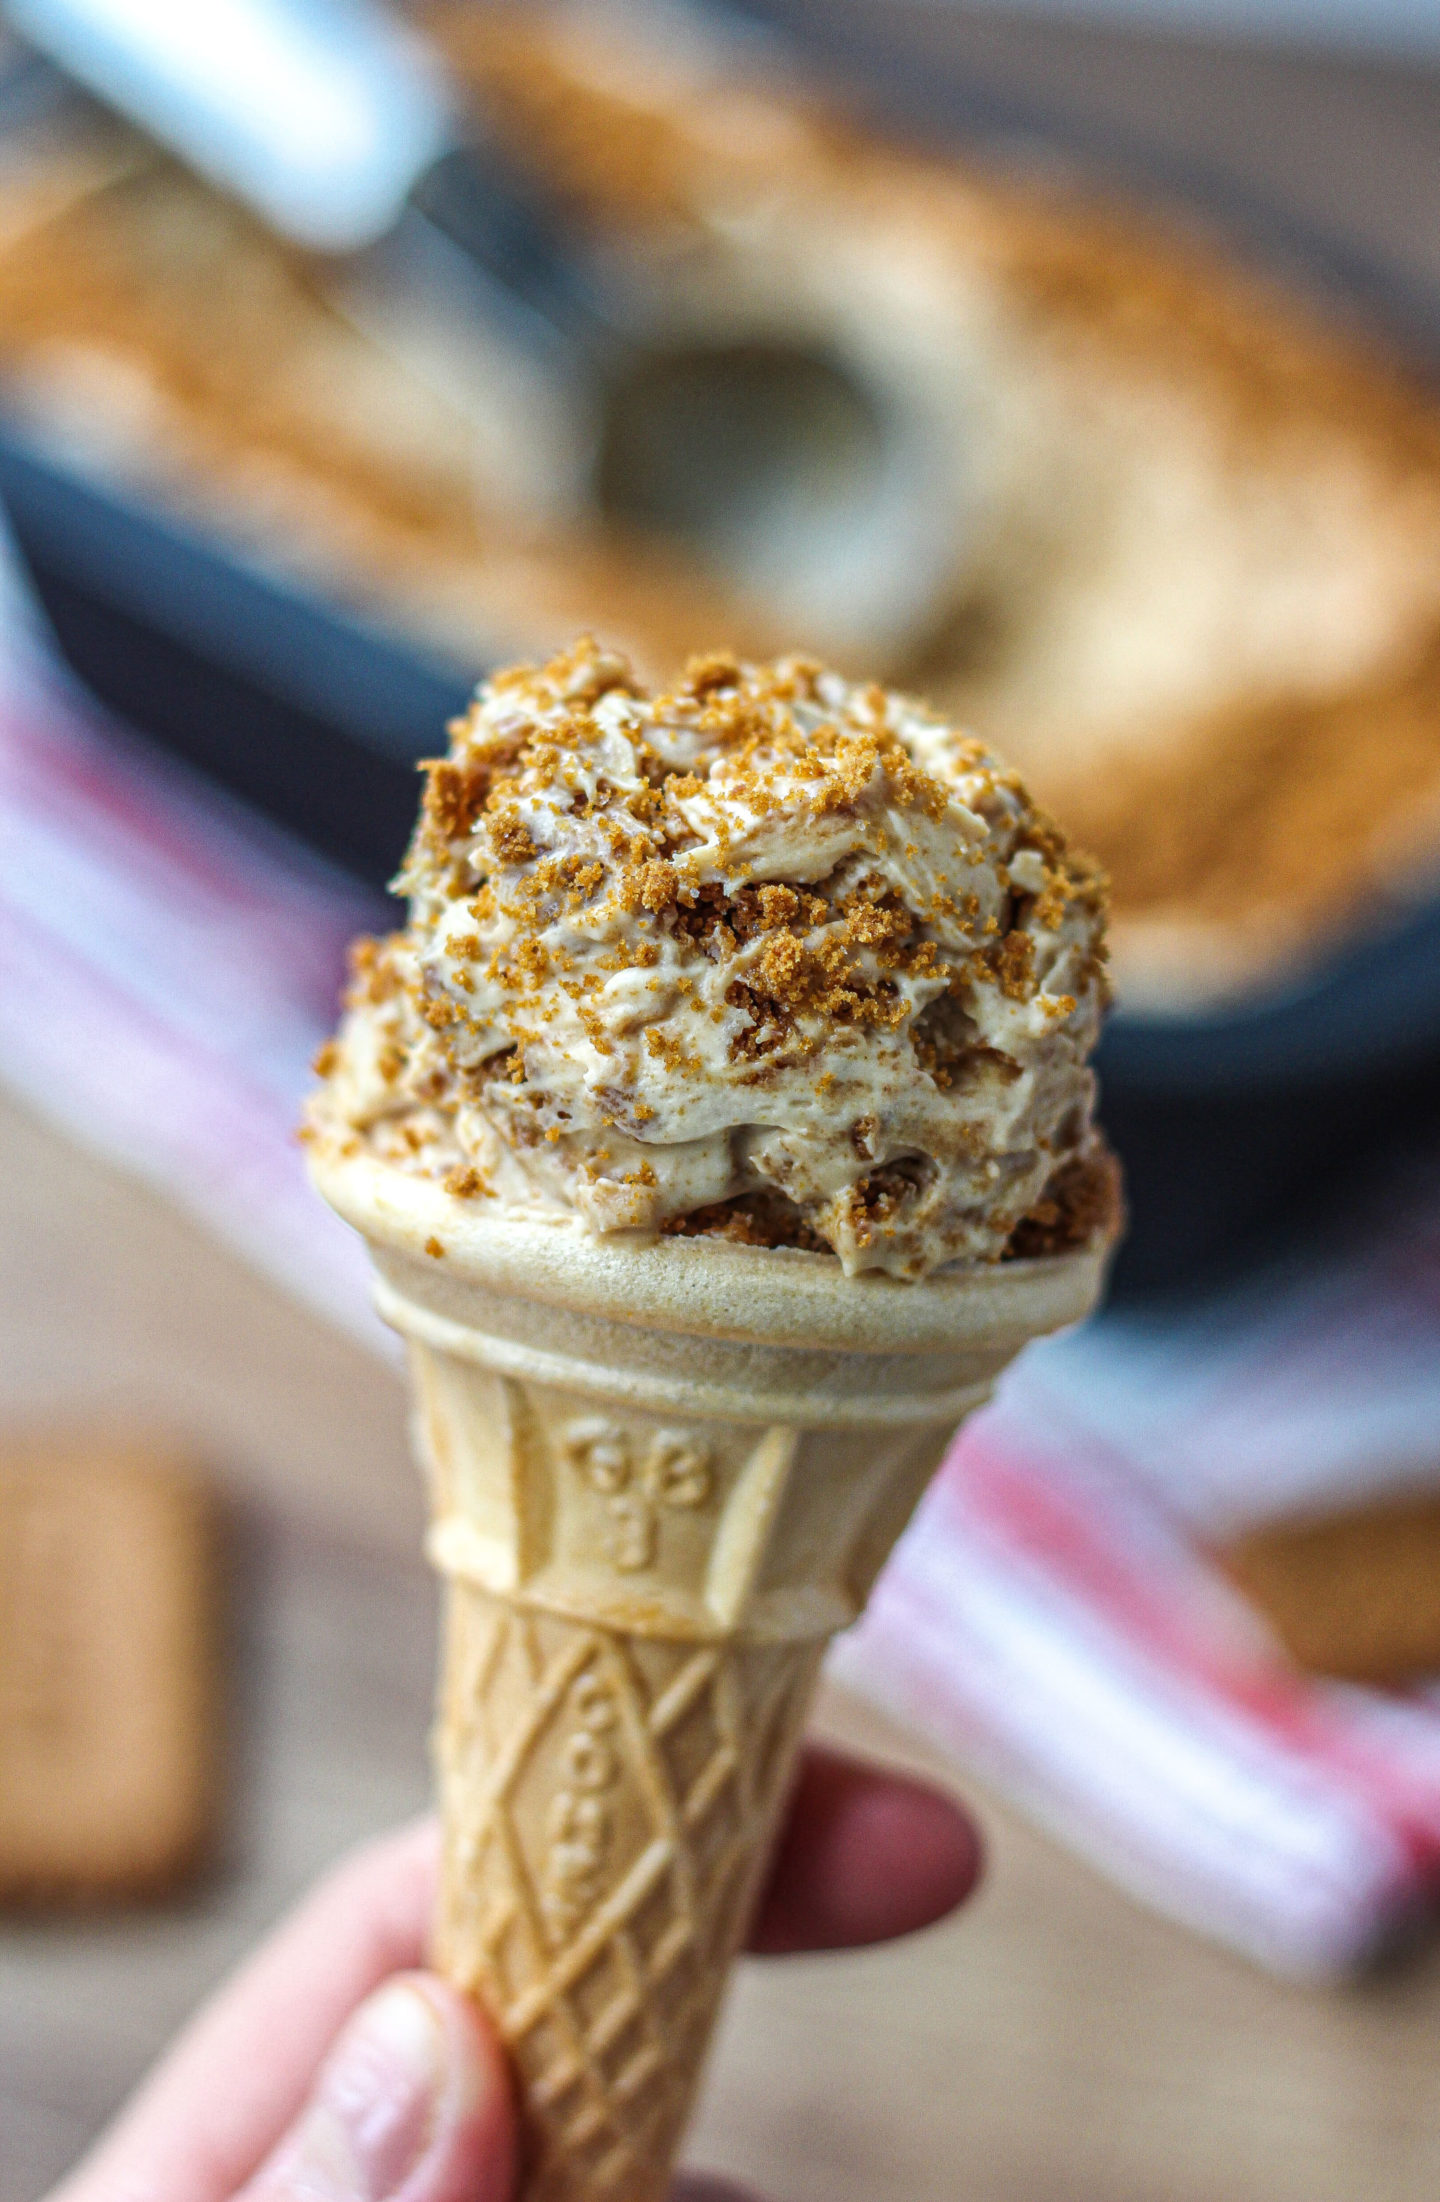 Biscoff ice cream in a cone